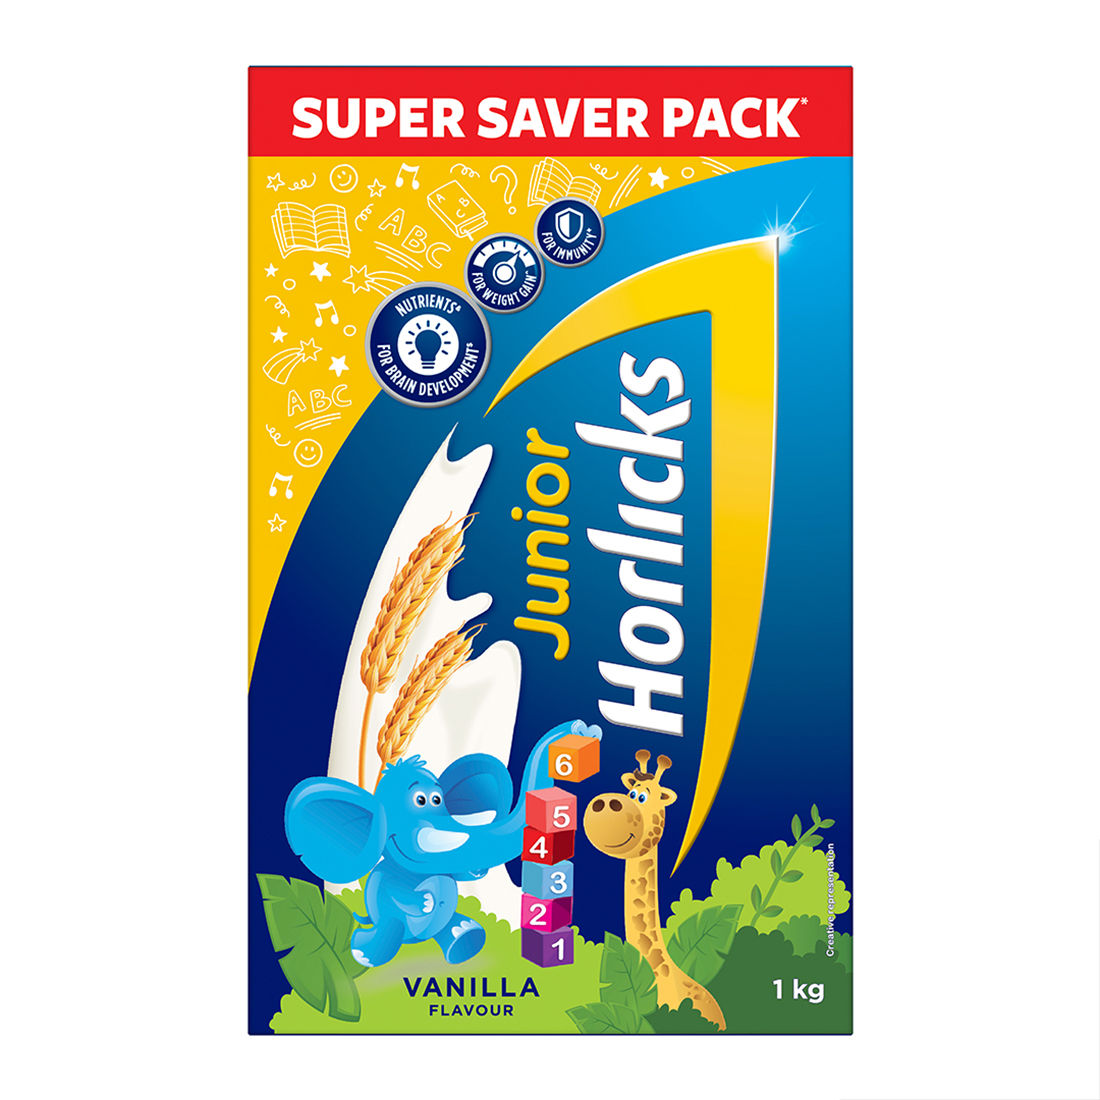 Buy Horlicks Junior Vanilla Flavour Health & Nutrition Drink Powder, 1 kg Refill Pack Online